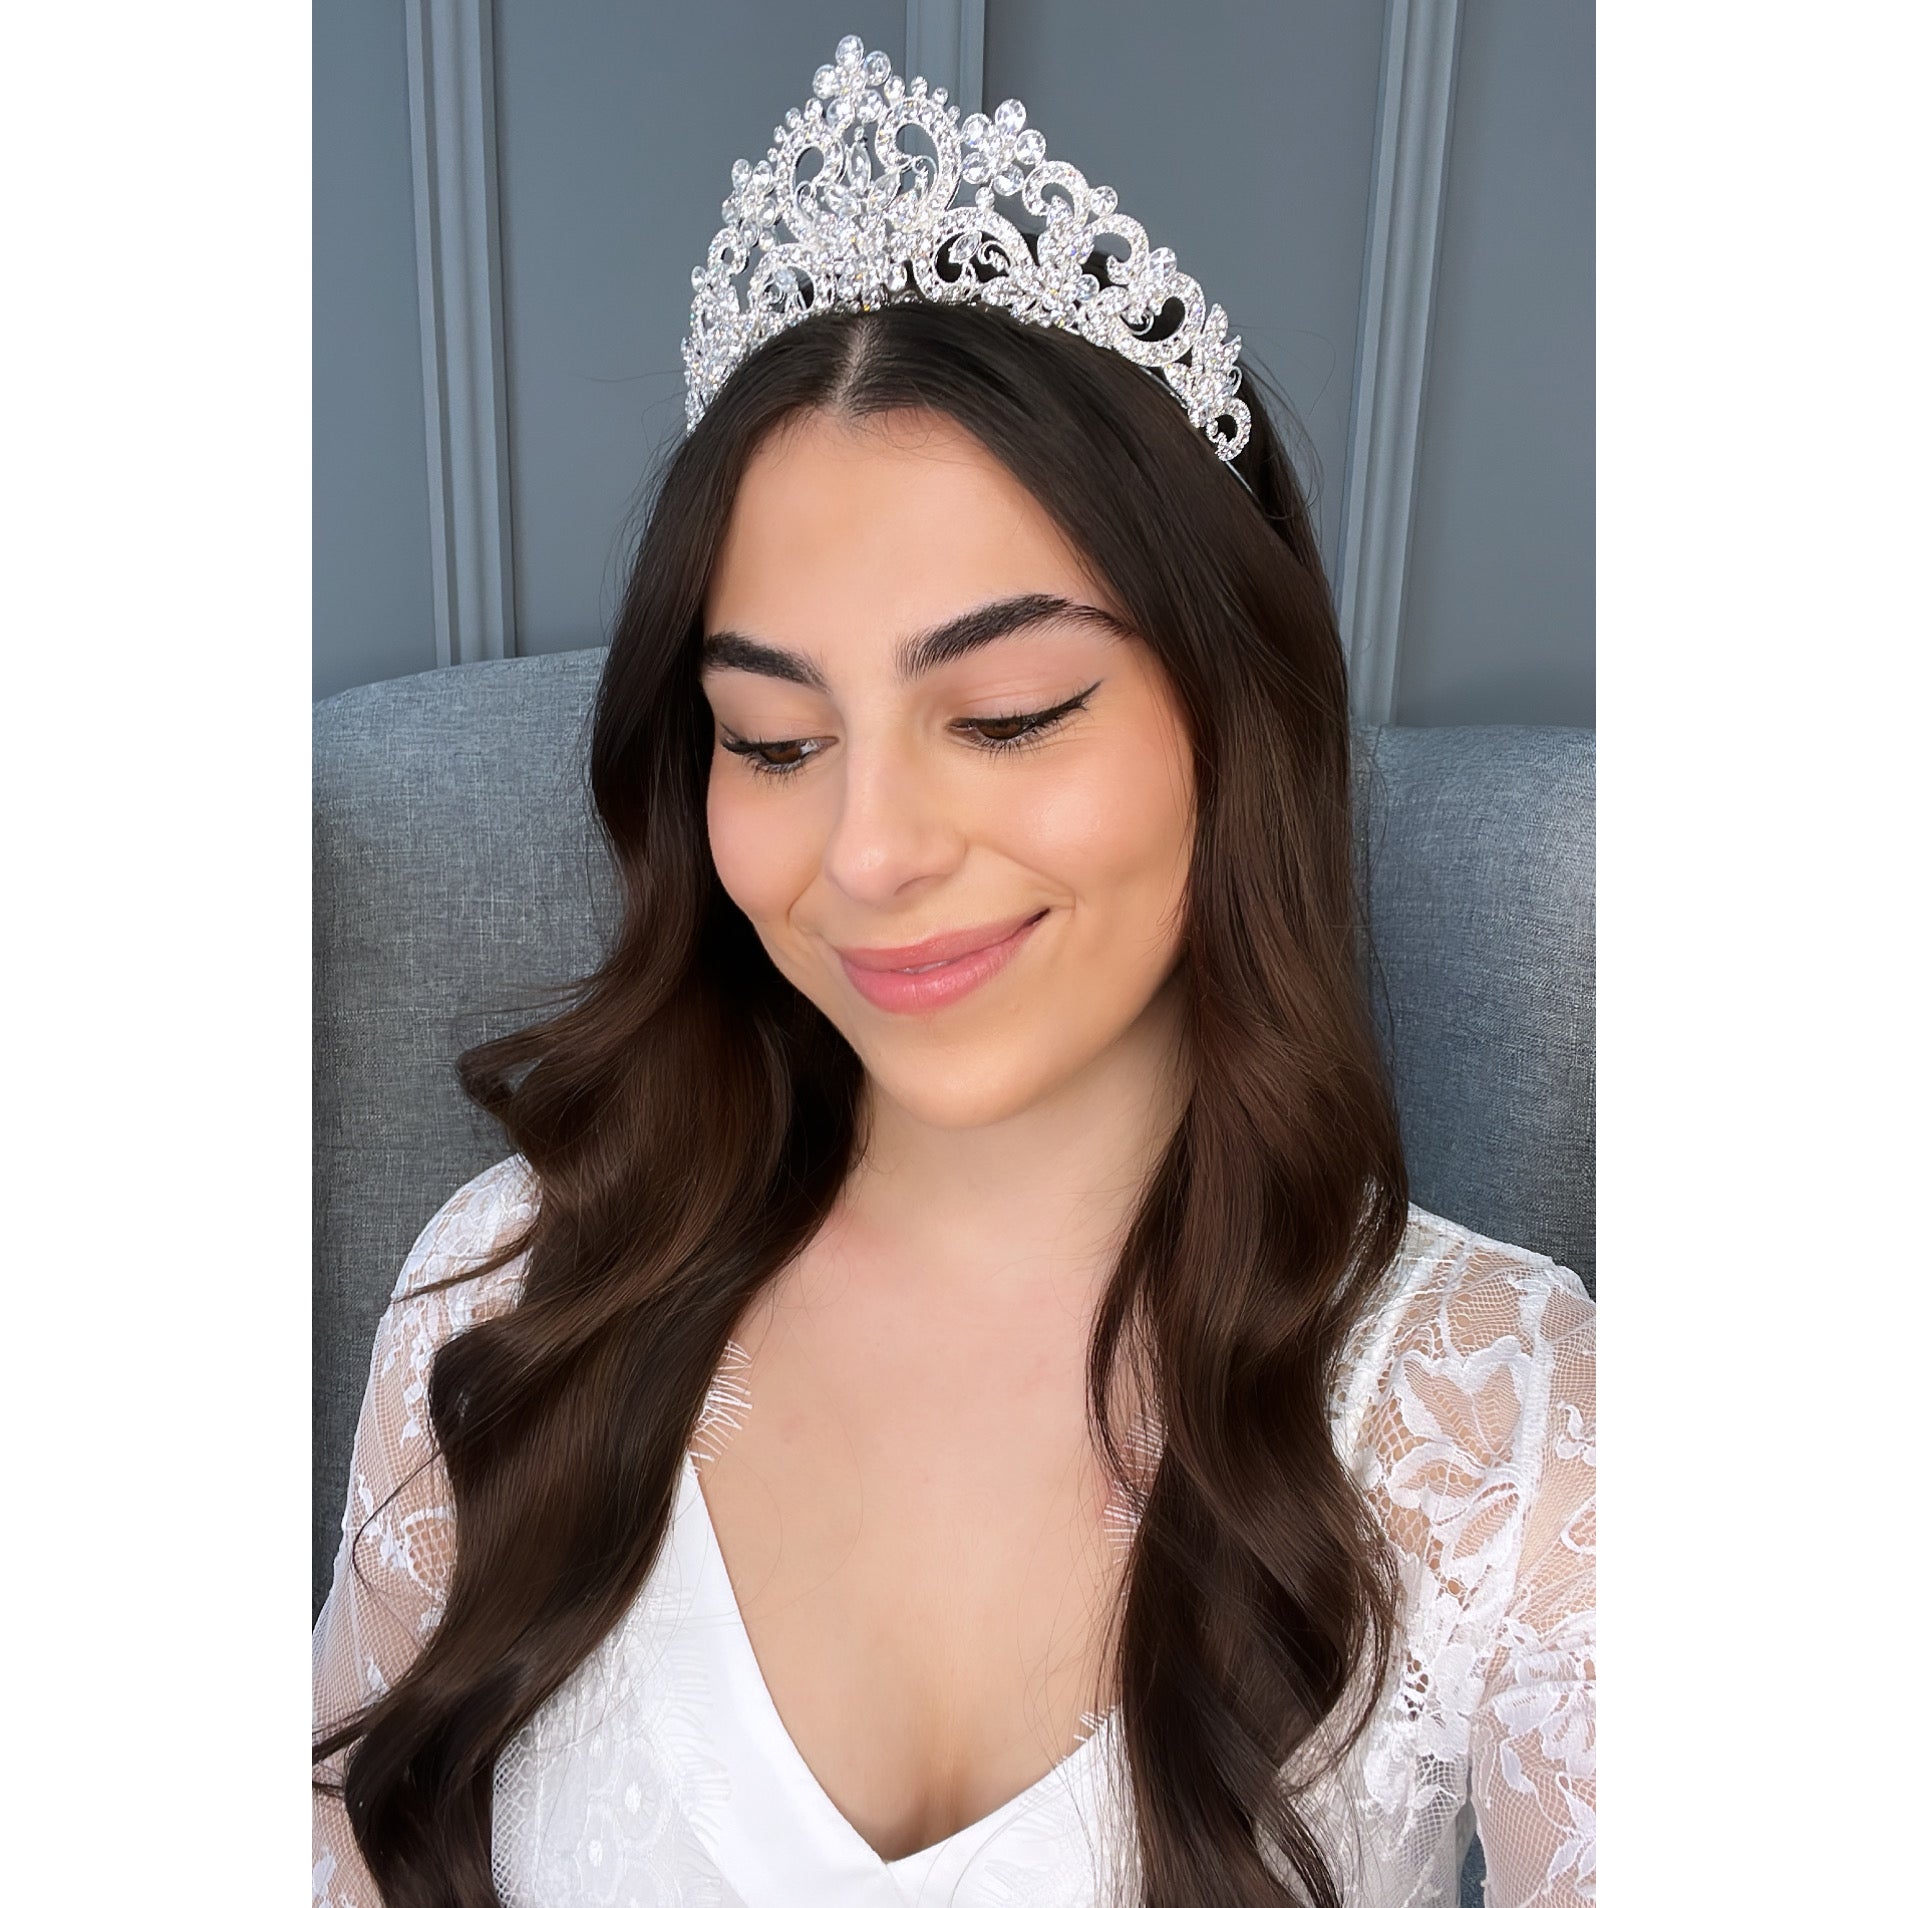 Bellazza Bridal Crown Hair Accessories - Tiara & Crown    